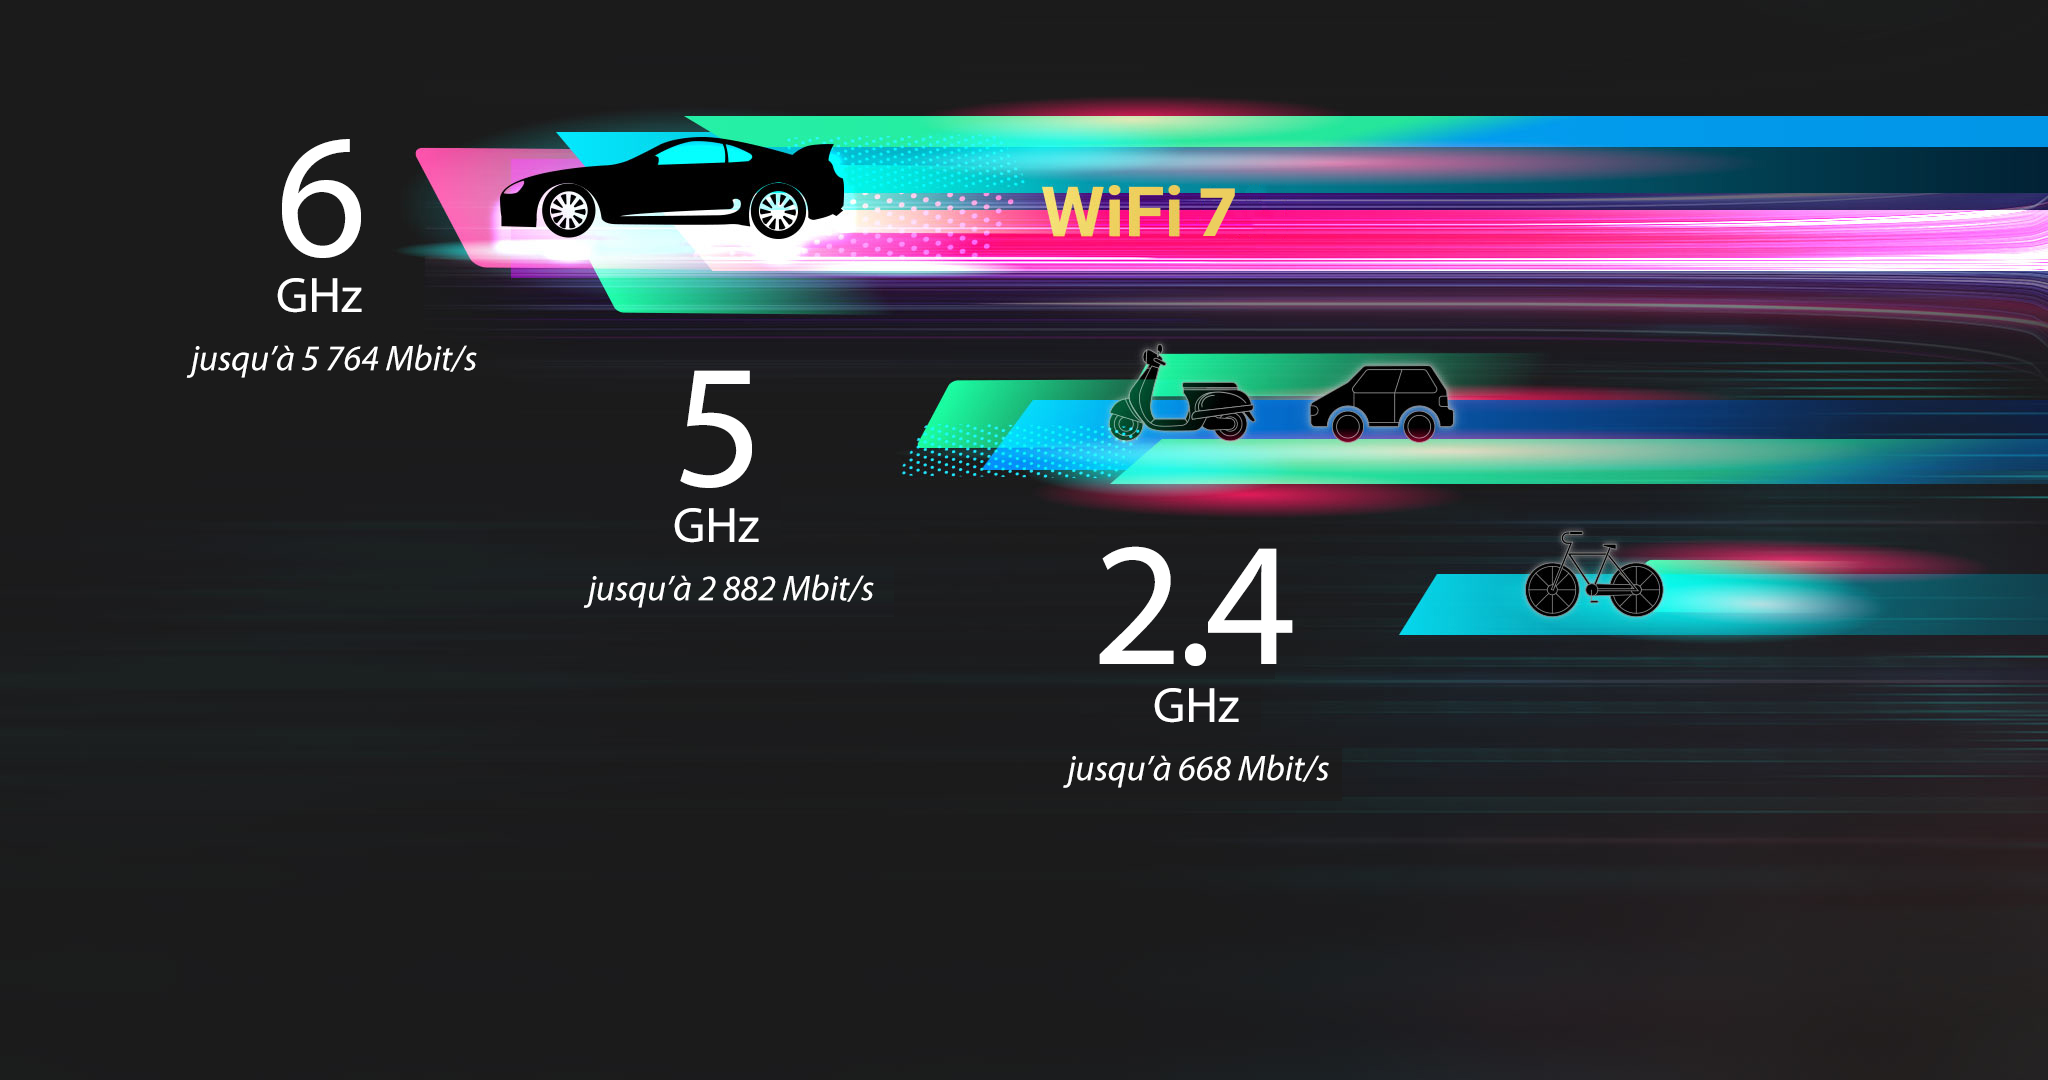 WiFi 7 sur bande 6GHz fournissant des canaux 320 MHz, augmente la vitesse jusqu’à 5 764 Mbit/s.